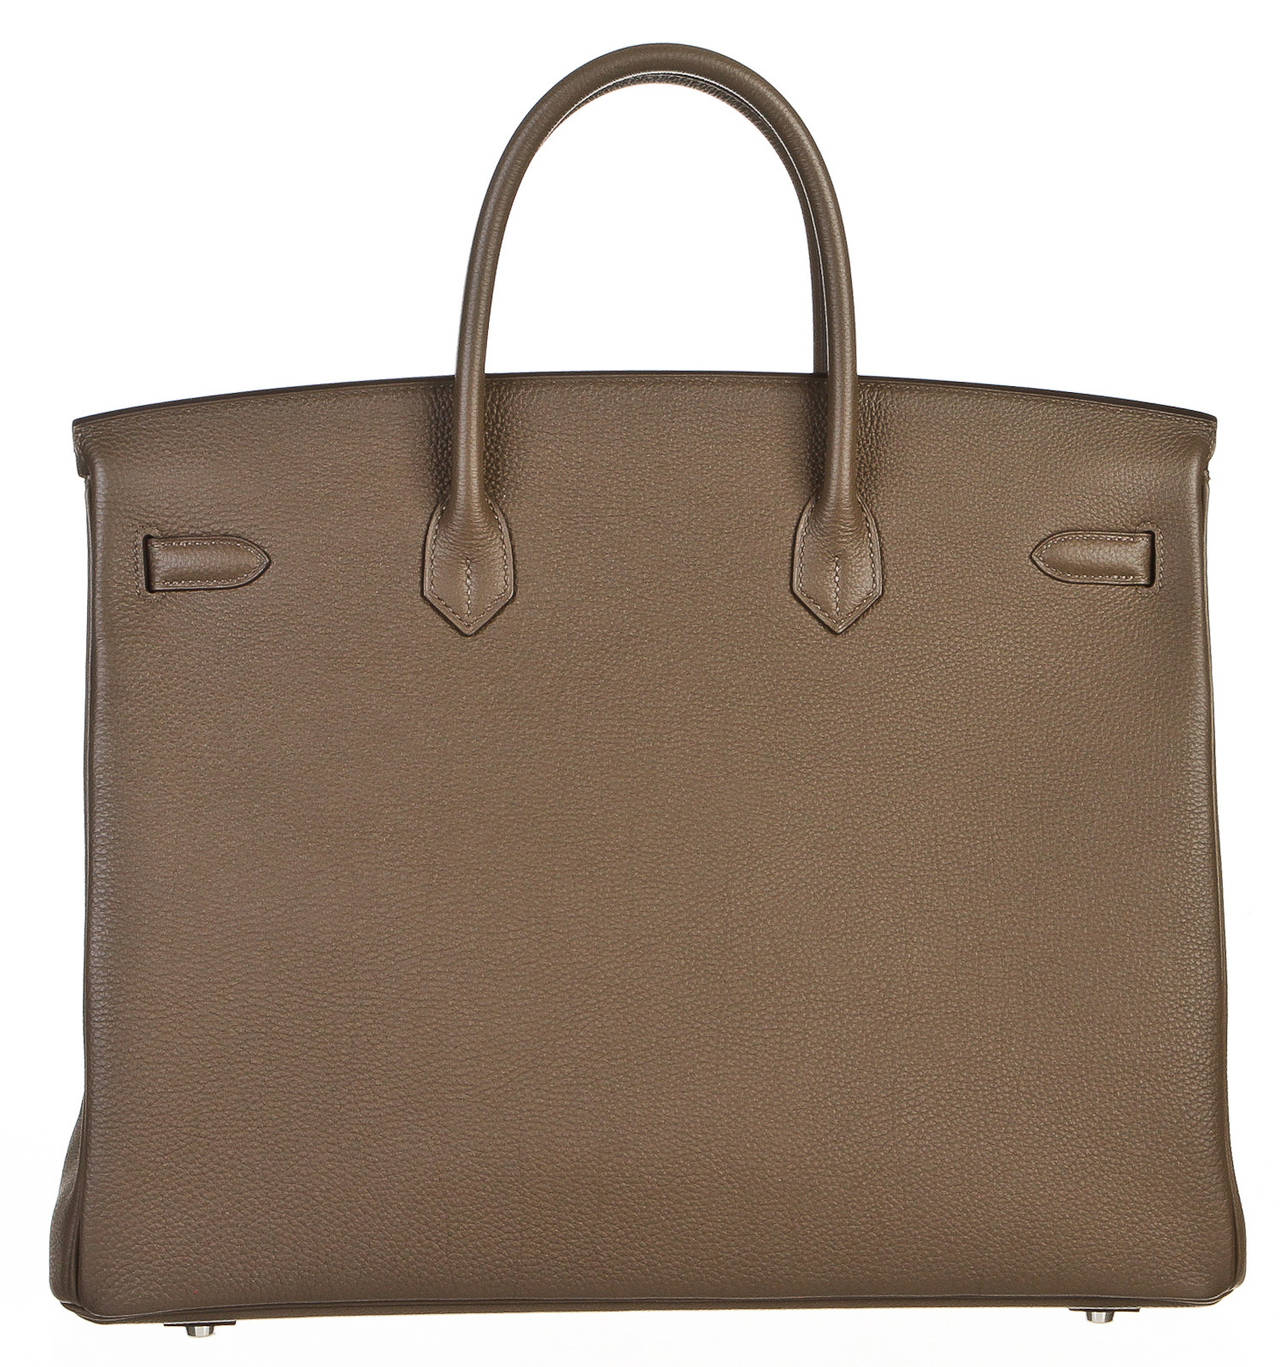 Hermes Taupe 40cm Togo Leather Birkin Handbag SHW For Sale 1